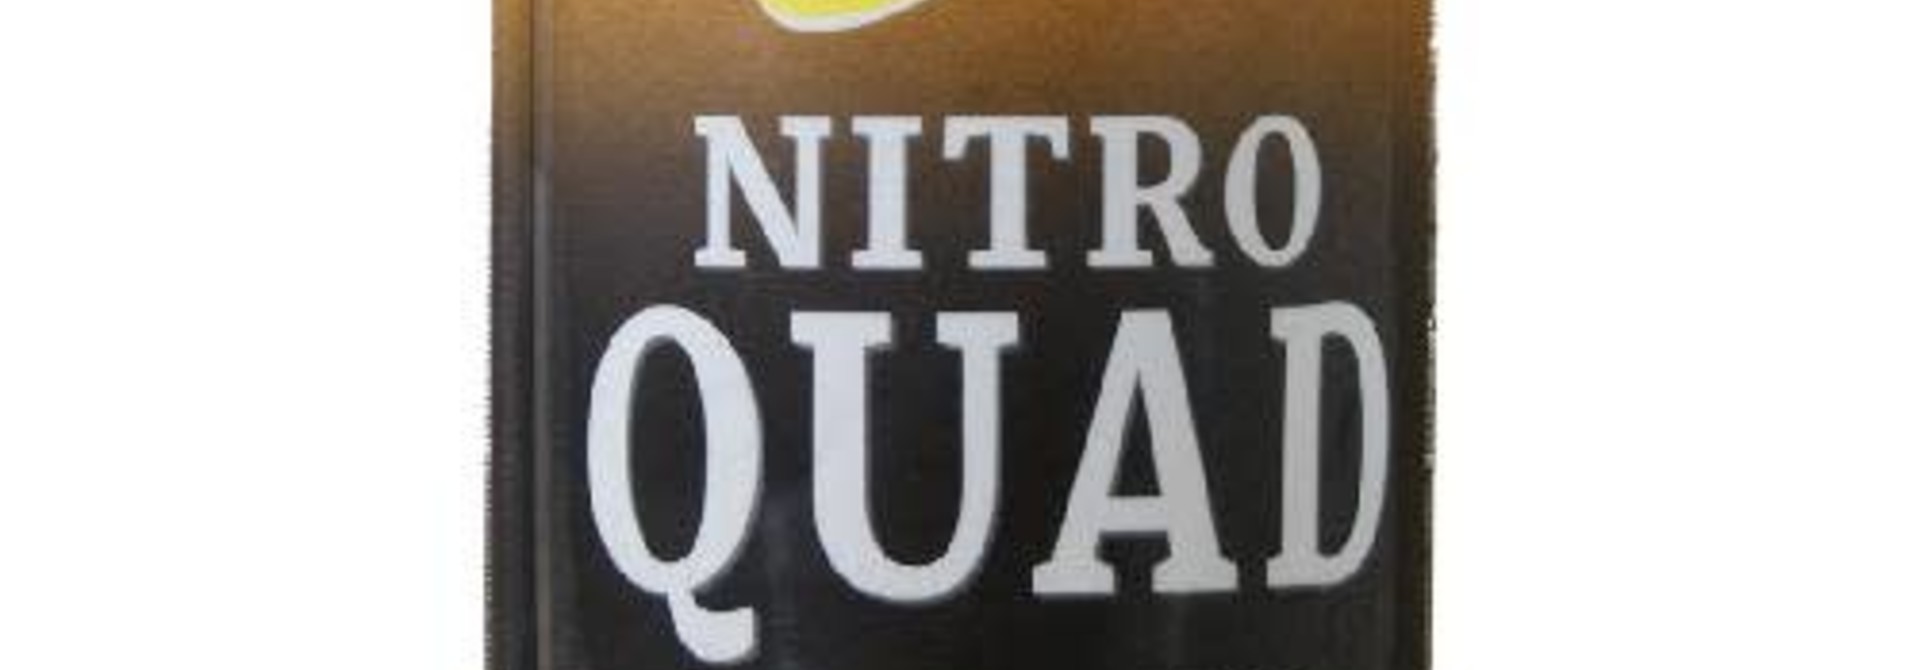 Nitro Quad